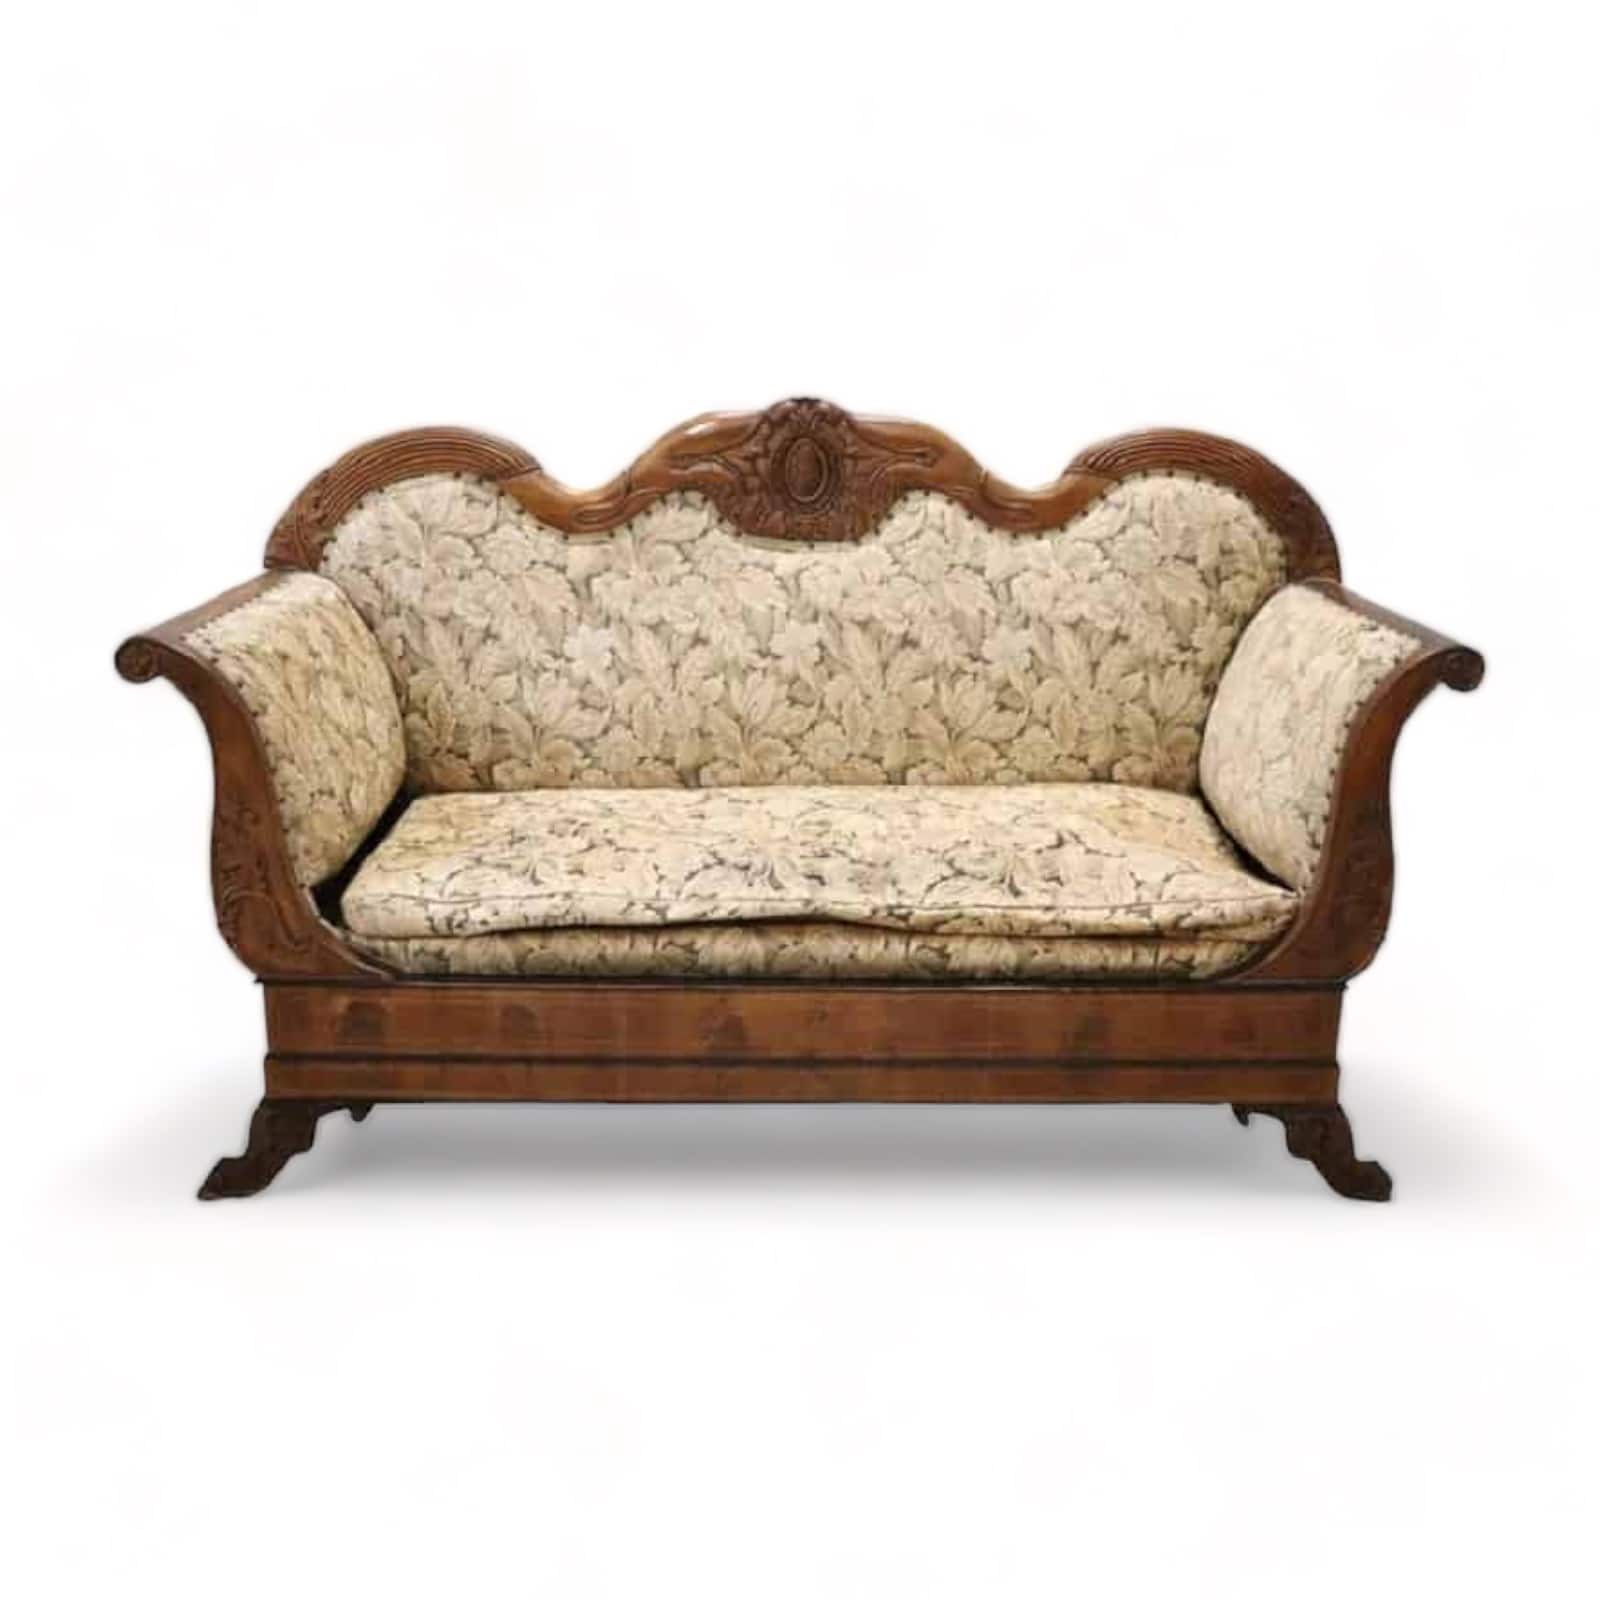 Antique Satinwood Furniture for sale